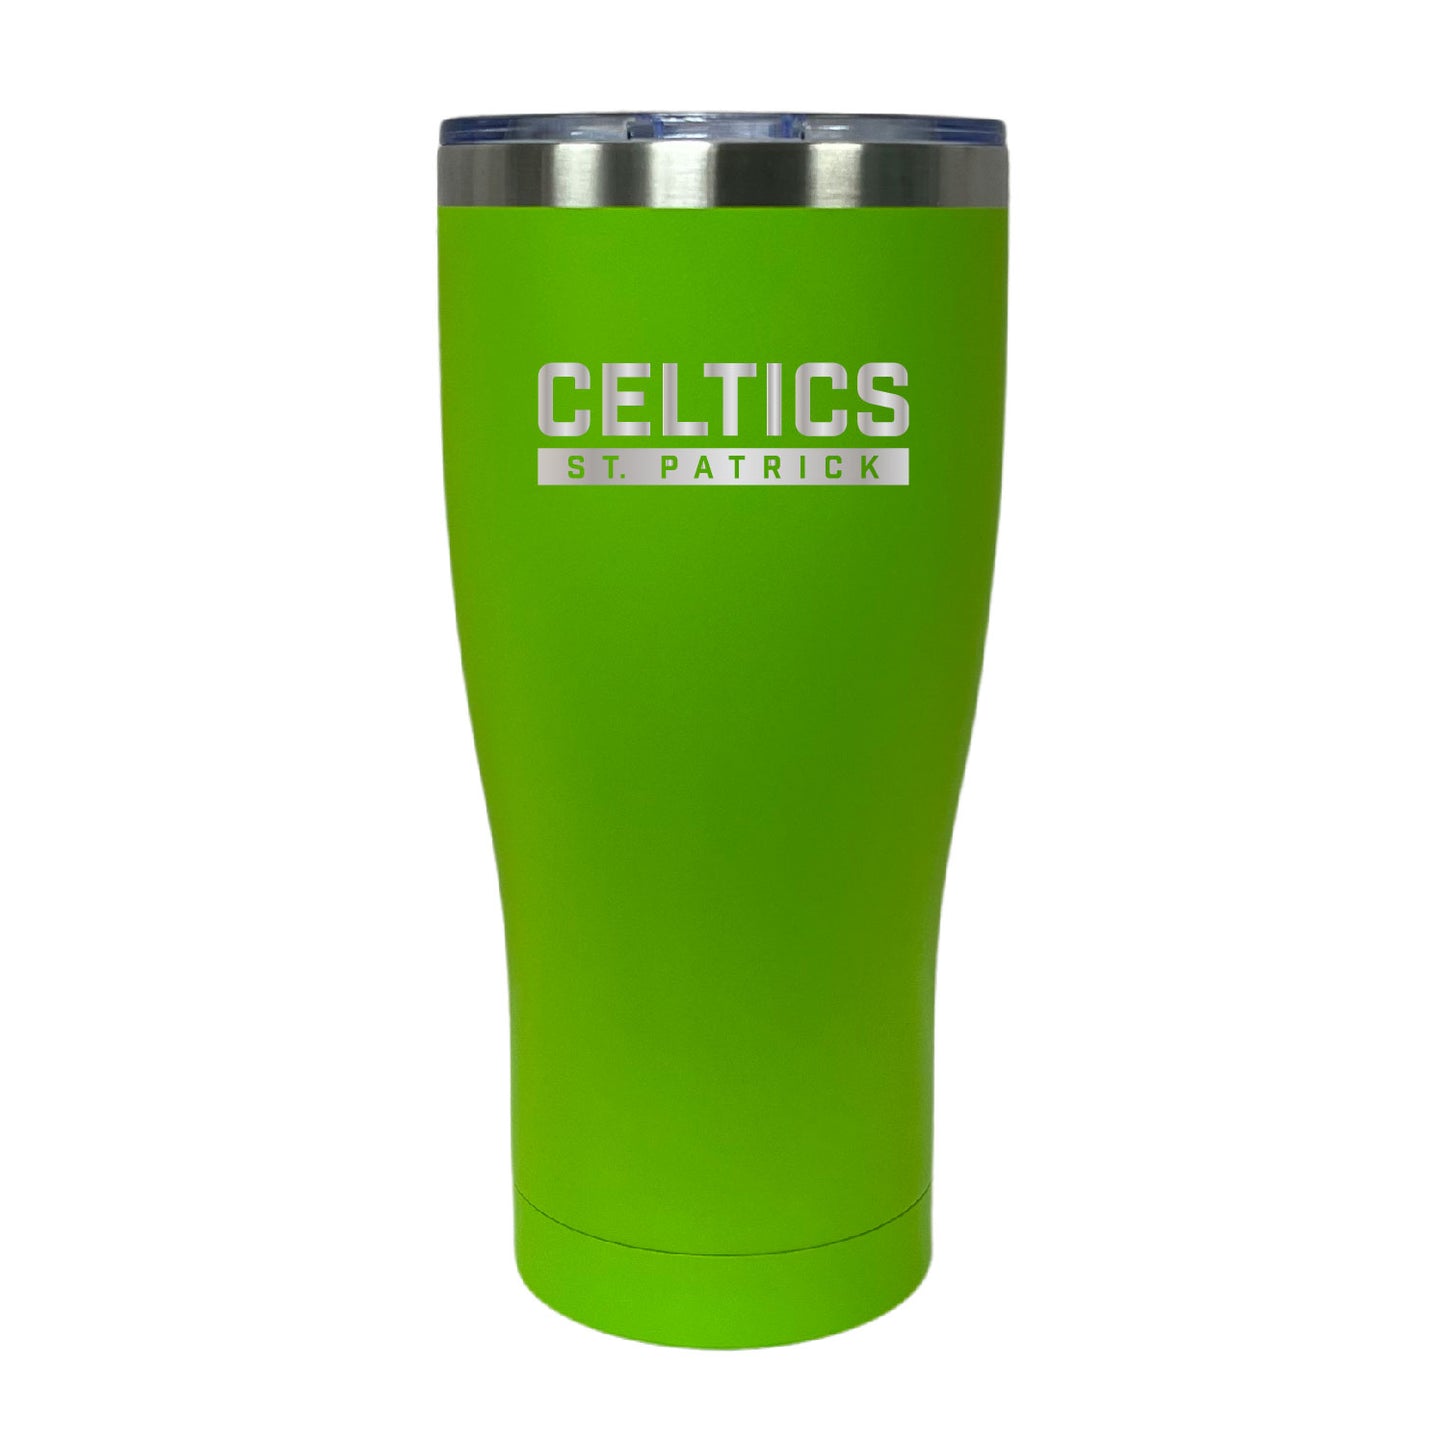 Celtics| Laser Engraved Tumbler